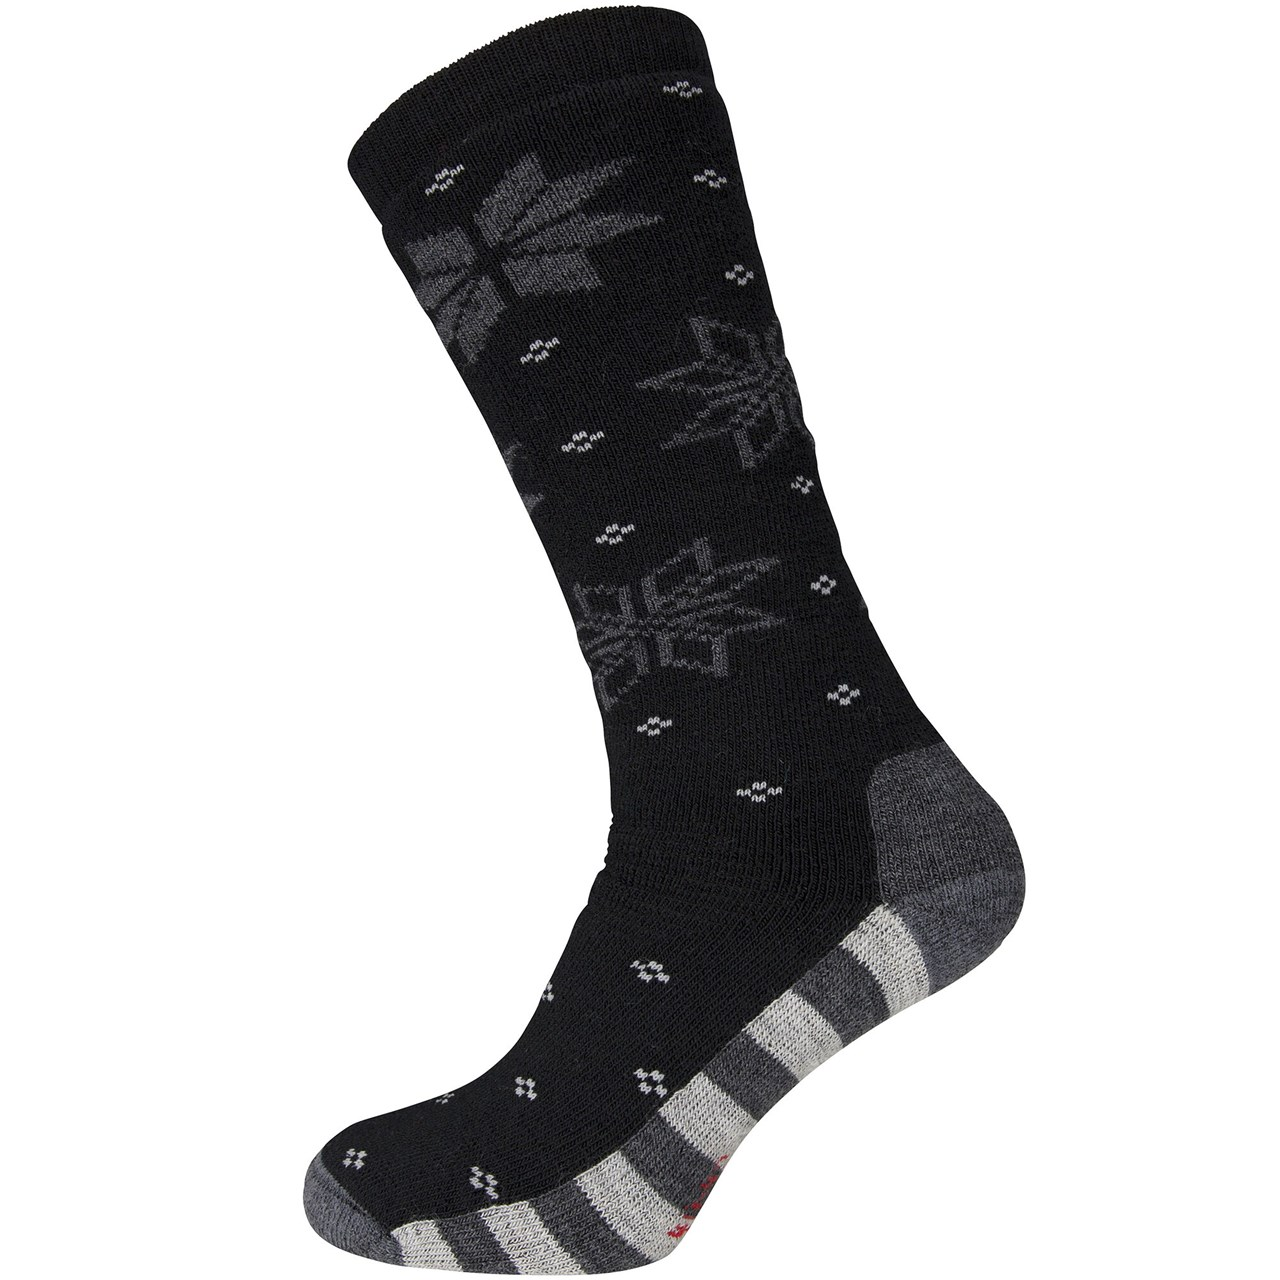 Ulvang Maristua Sock Black/Charcoal